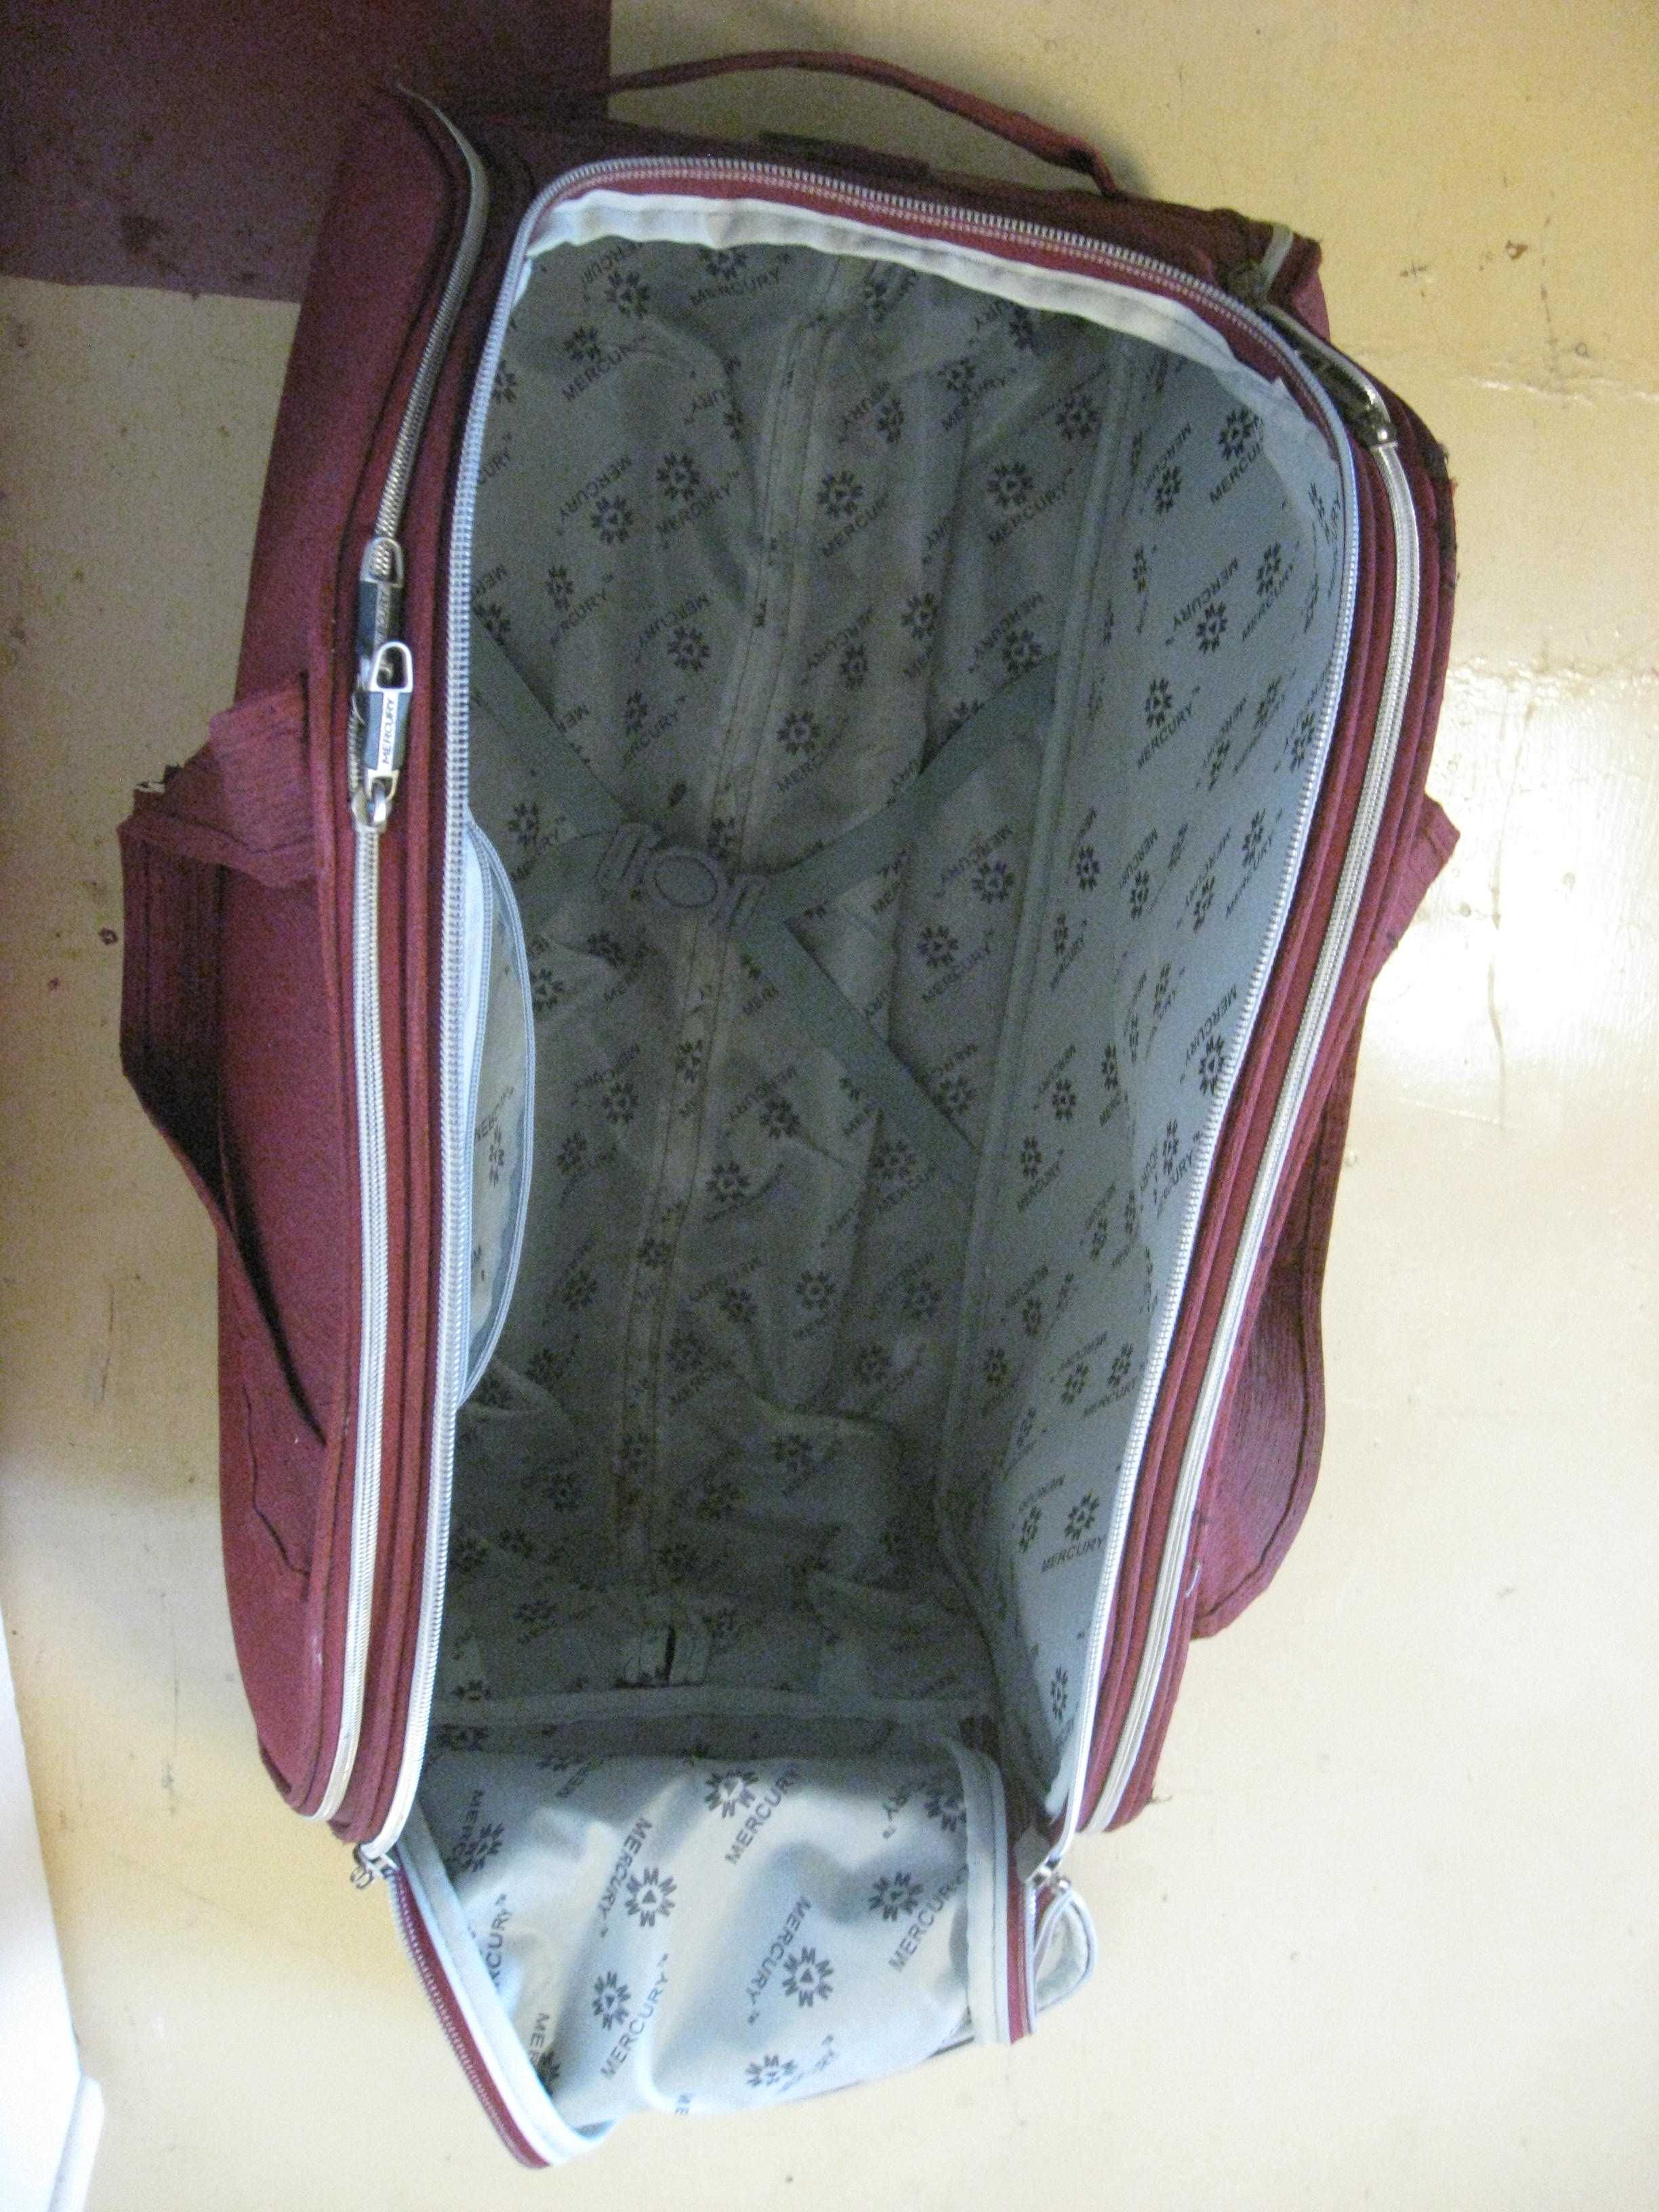 Сумка дорожная Mercury 45*65*36см на колесах  чемодан в робочому стані